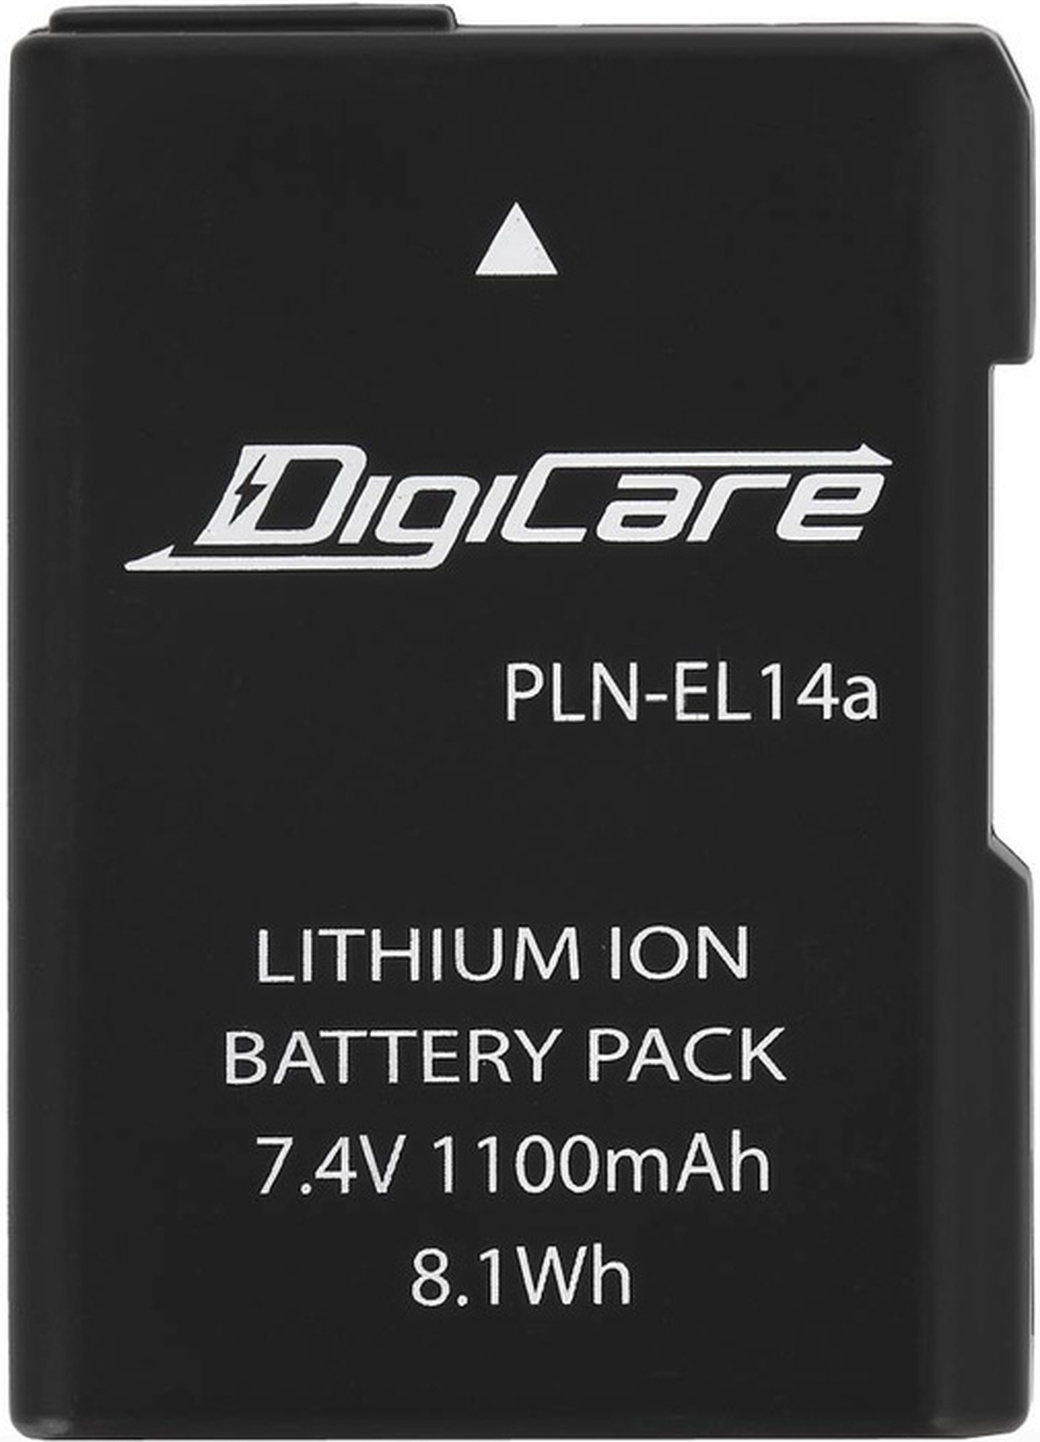 Аккумулятор DigiCare PLN-EL14a / EN-EL14, EL14a, для D3200, D3300, D5300, Df, CoolPix P7800 фото